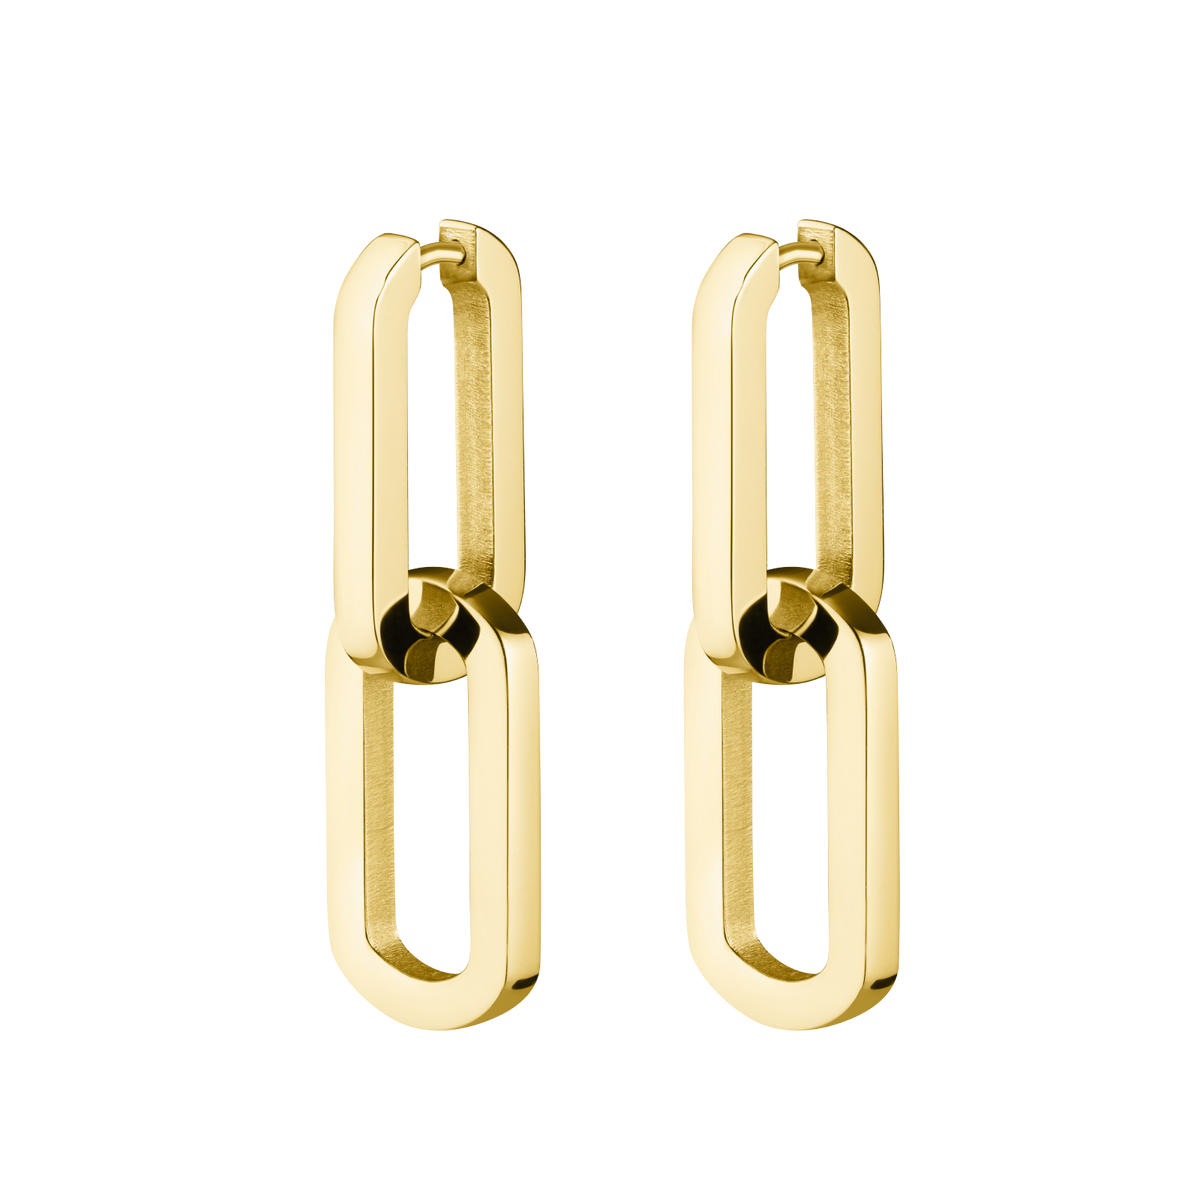 Dual Hoops Earrings - Gold J585